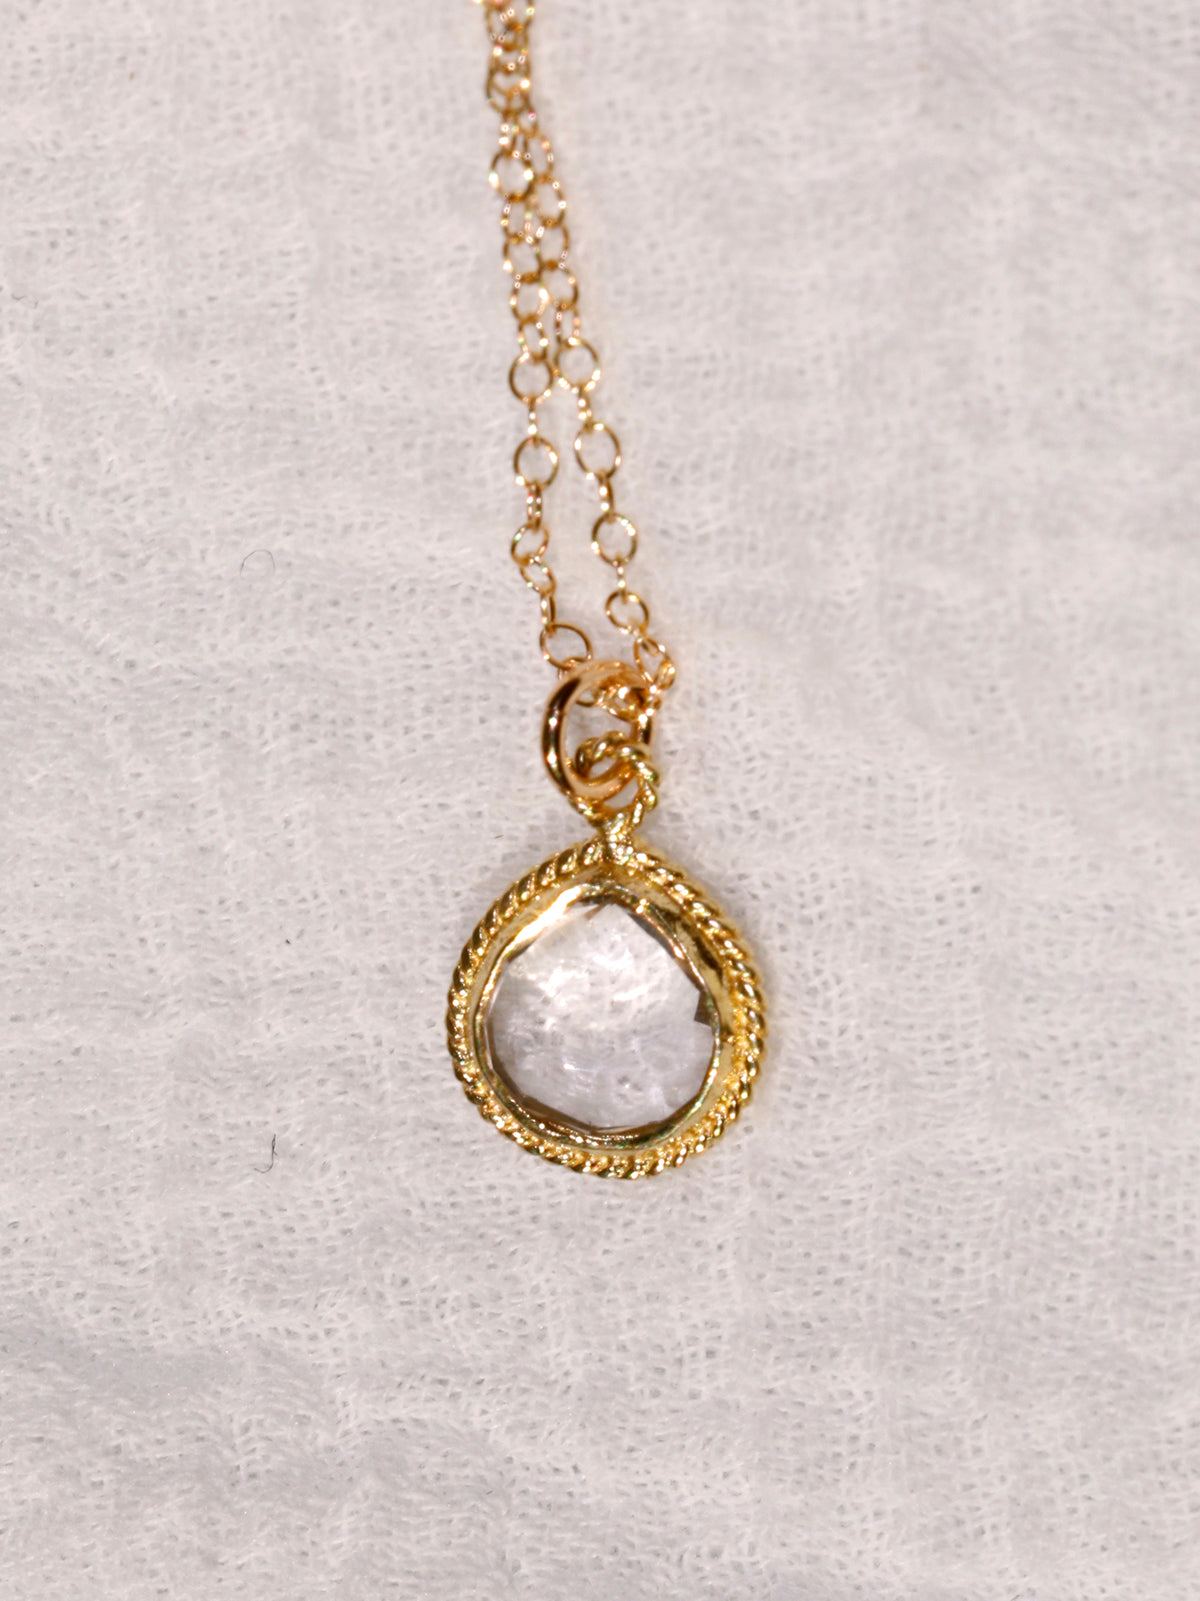 Susan Rifkin Gold Ornate Pendant - Teardrop (Multiple Colors!)